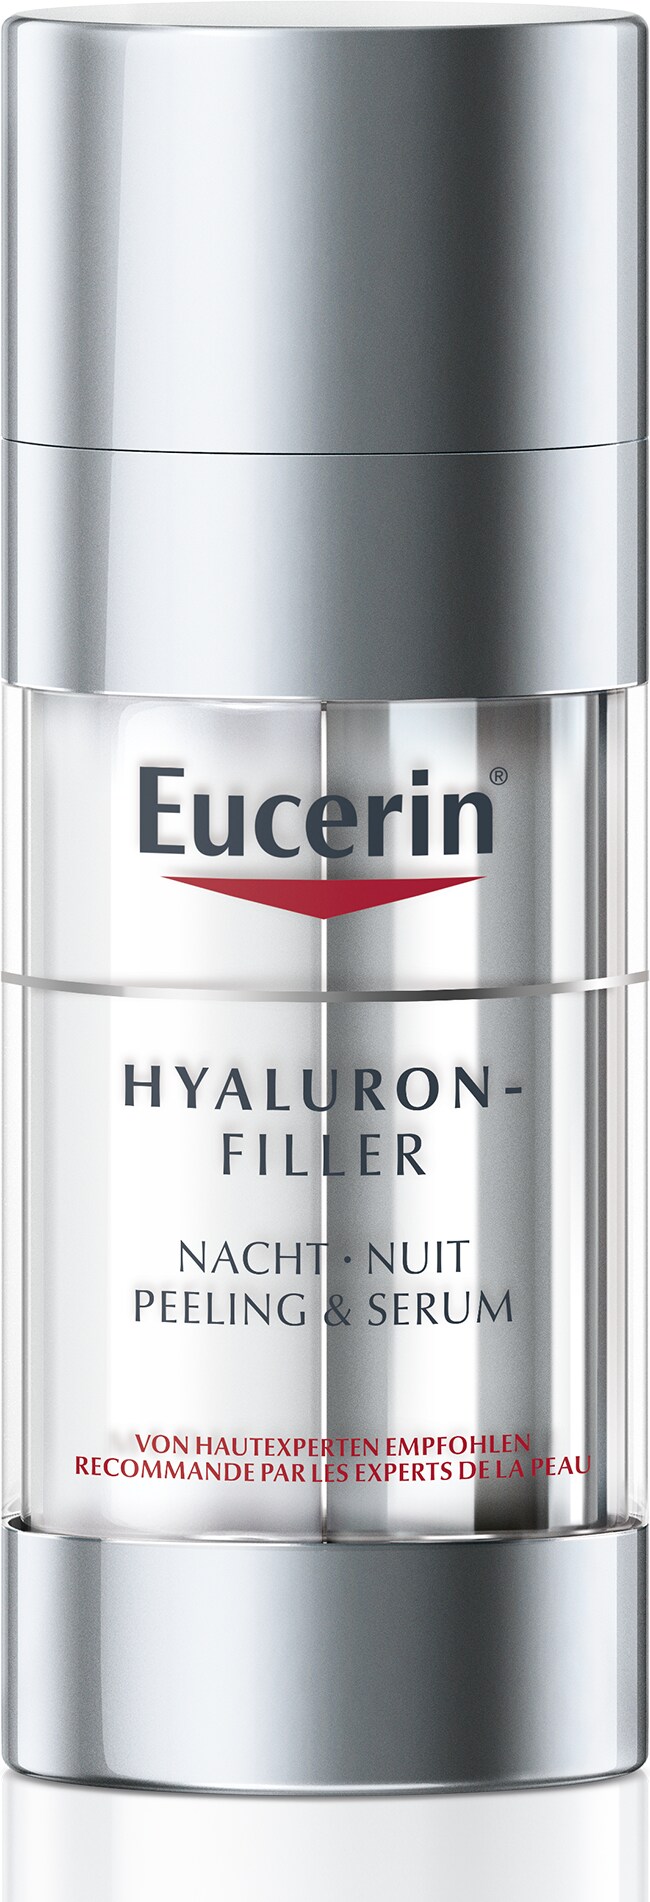 Eucerin Hyaluron-Filler (30 ml Gesichtsserum) kaufen